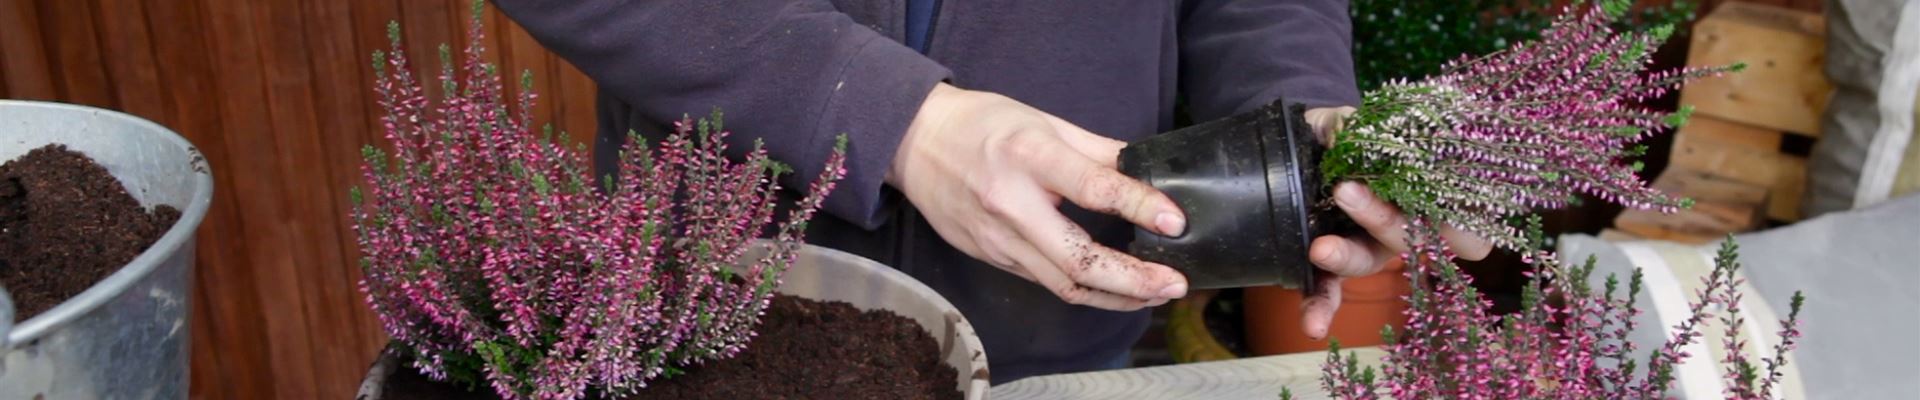 Knospenheide - Einpflanzen in ein Gefäß (thumbnail).jpg